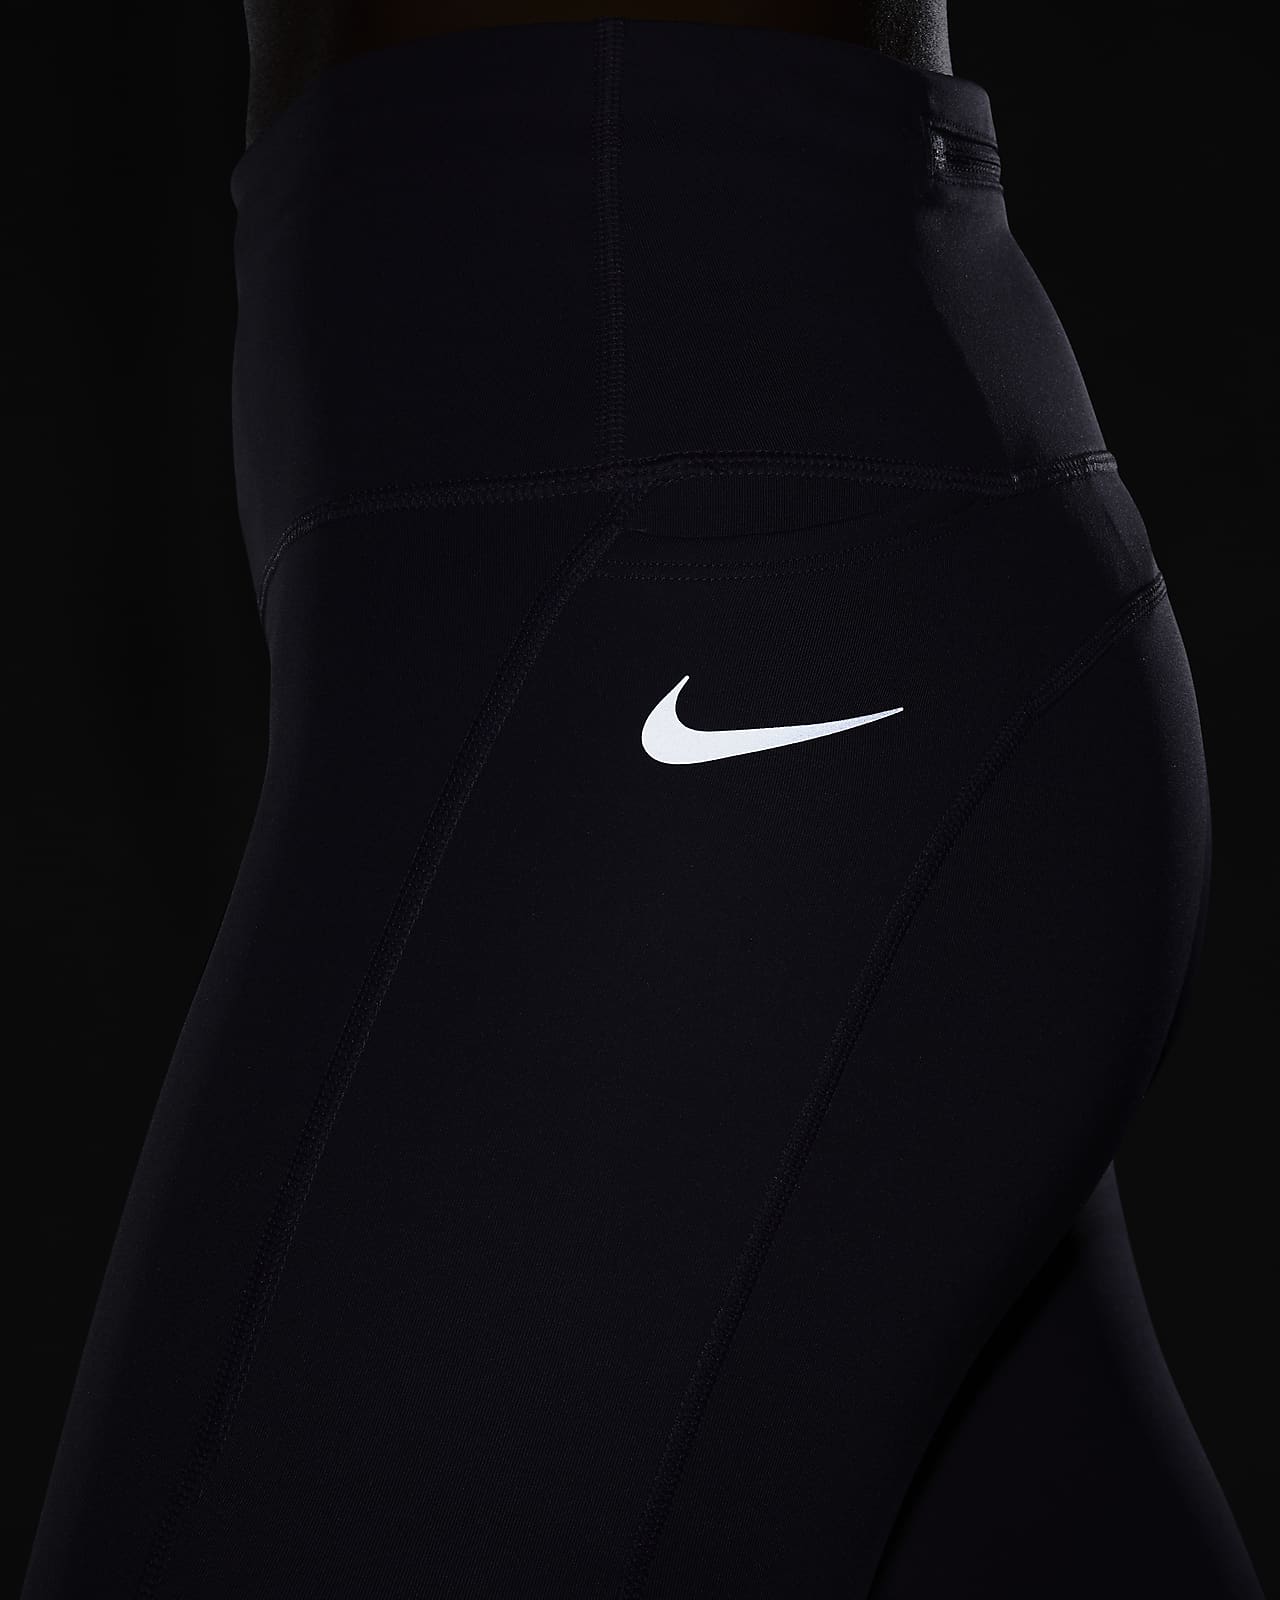 The best leggings for running by Nike. Nike RO